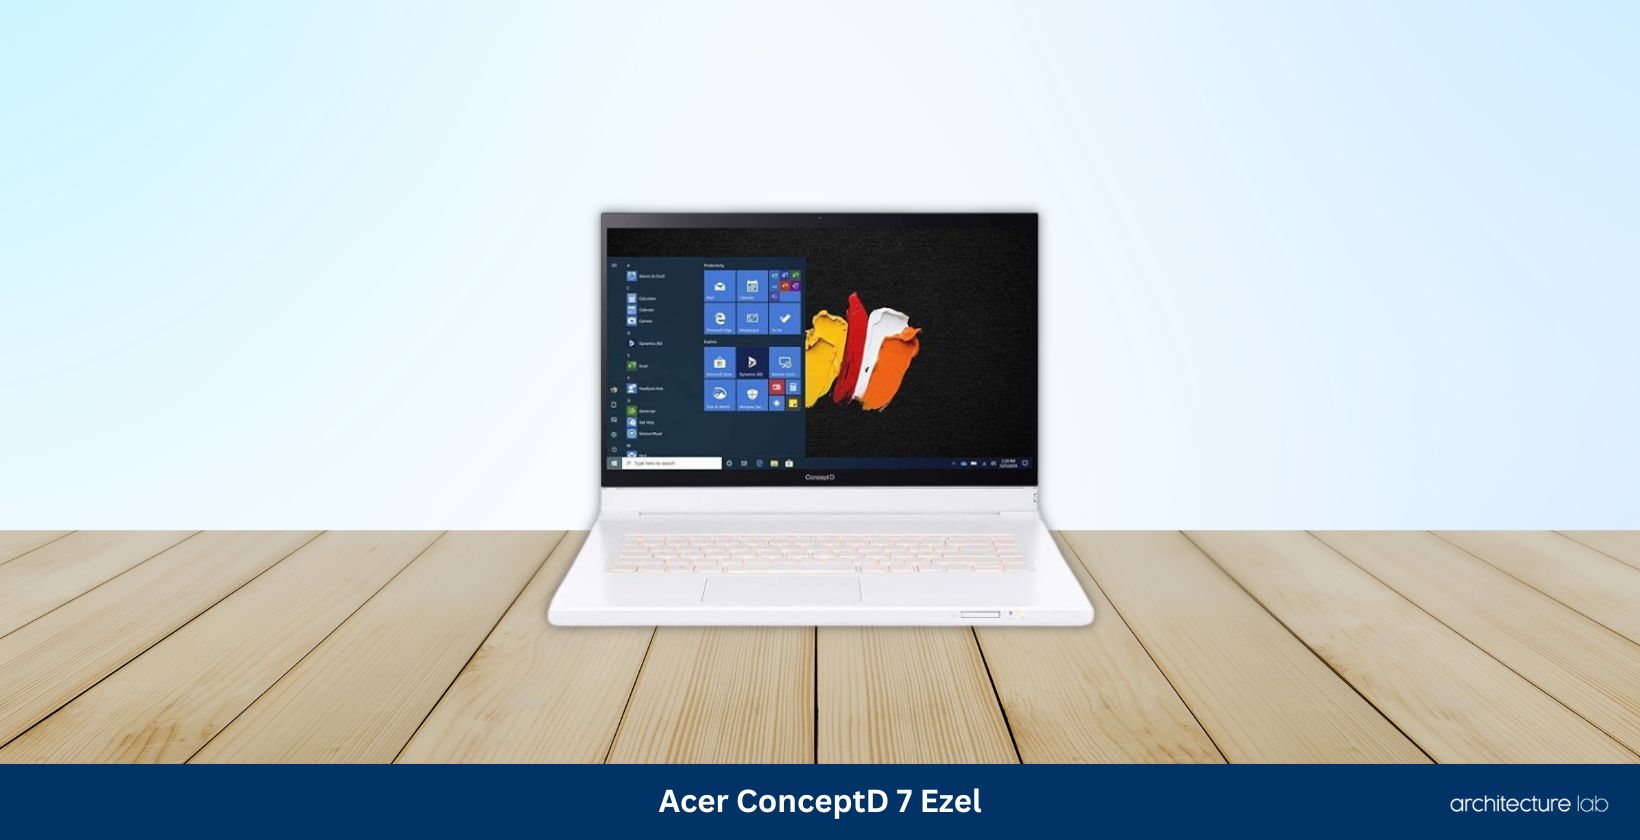 Acer conceptd 7 ezel